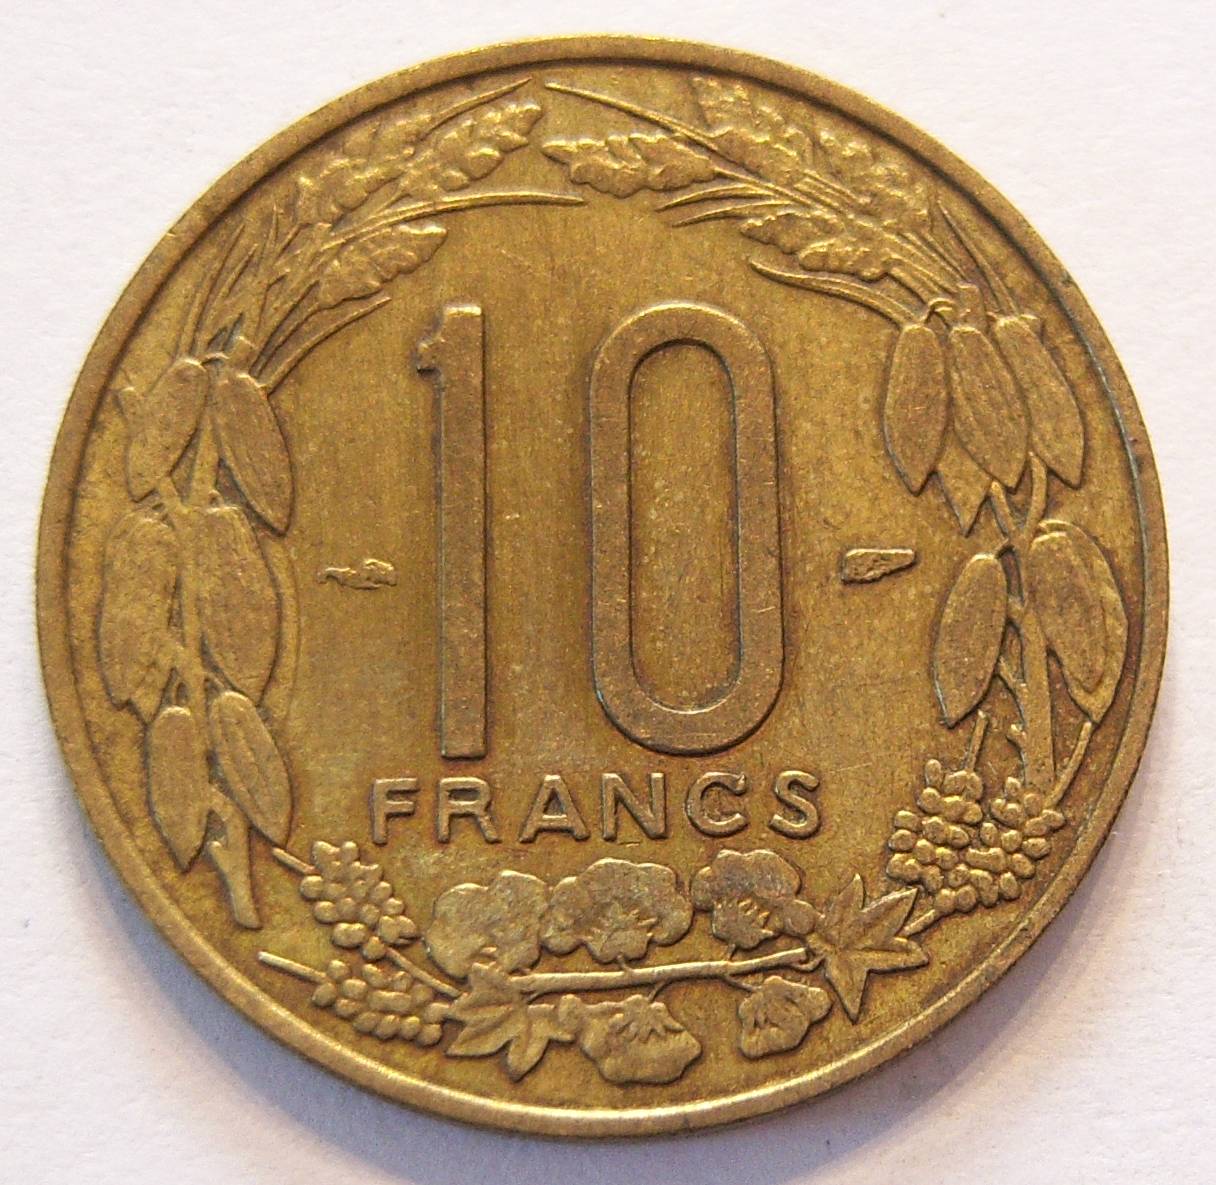  Kamerun 10 Francs 1958   